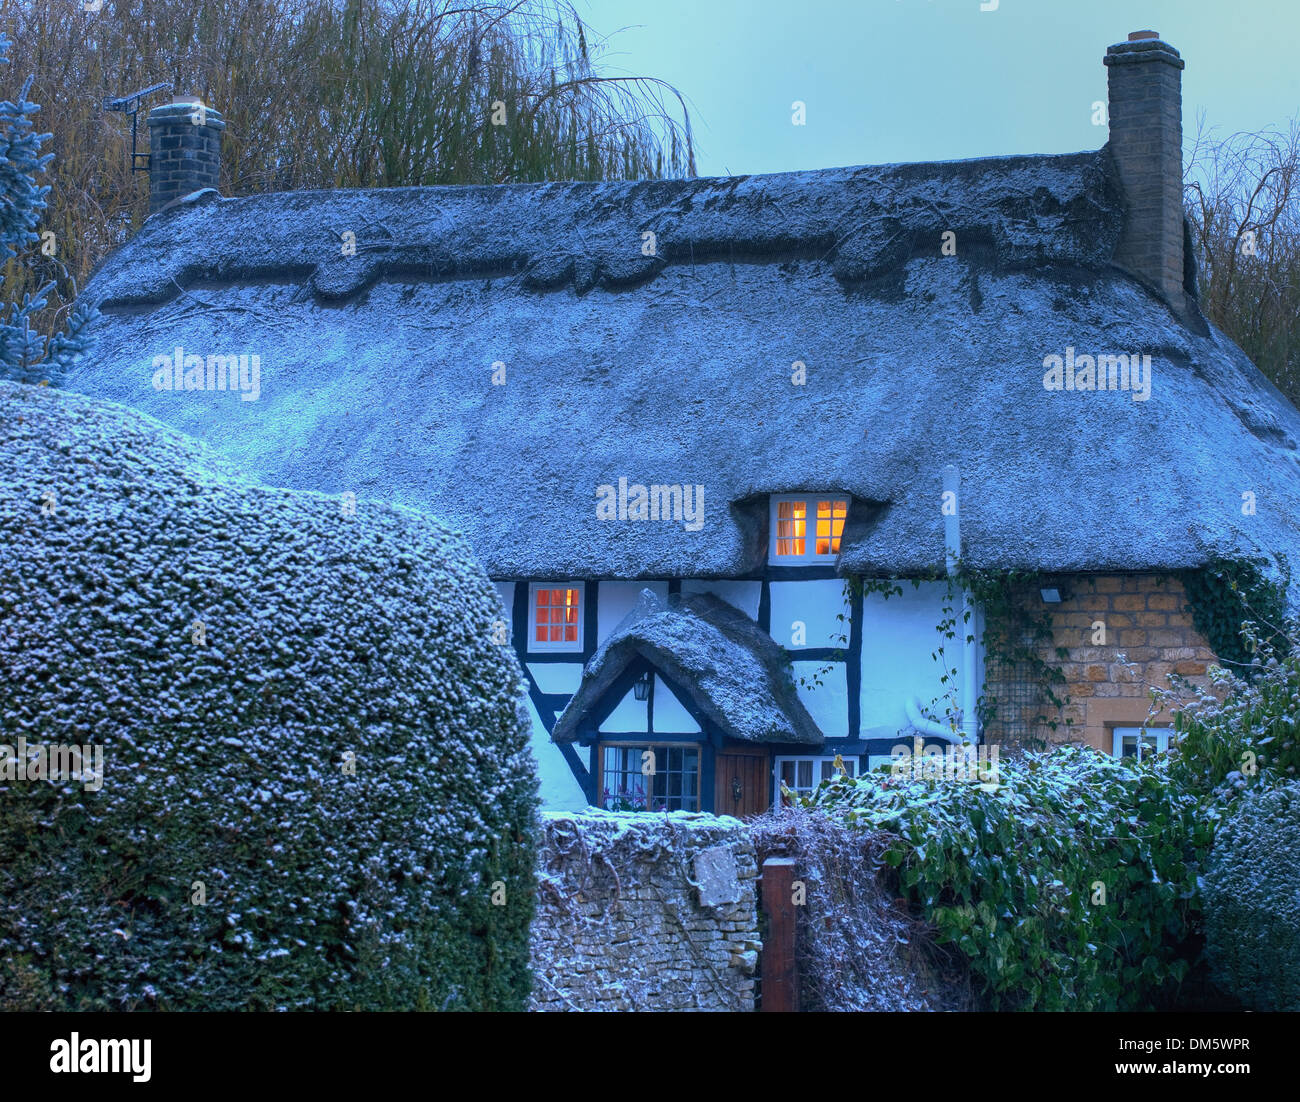 Noir et blanc, chaumière à pans de bois en hiver, Mickleton près de Chipping Campden, Gloucestershire, Angleterre. Banque D'Images